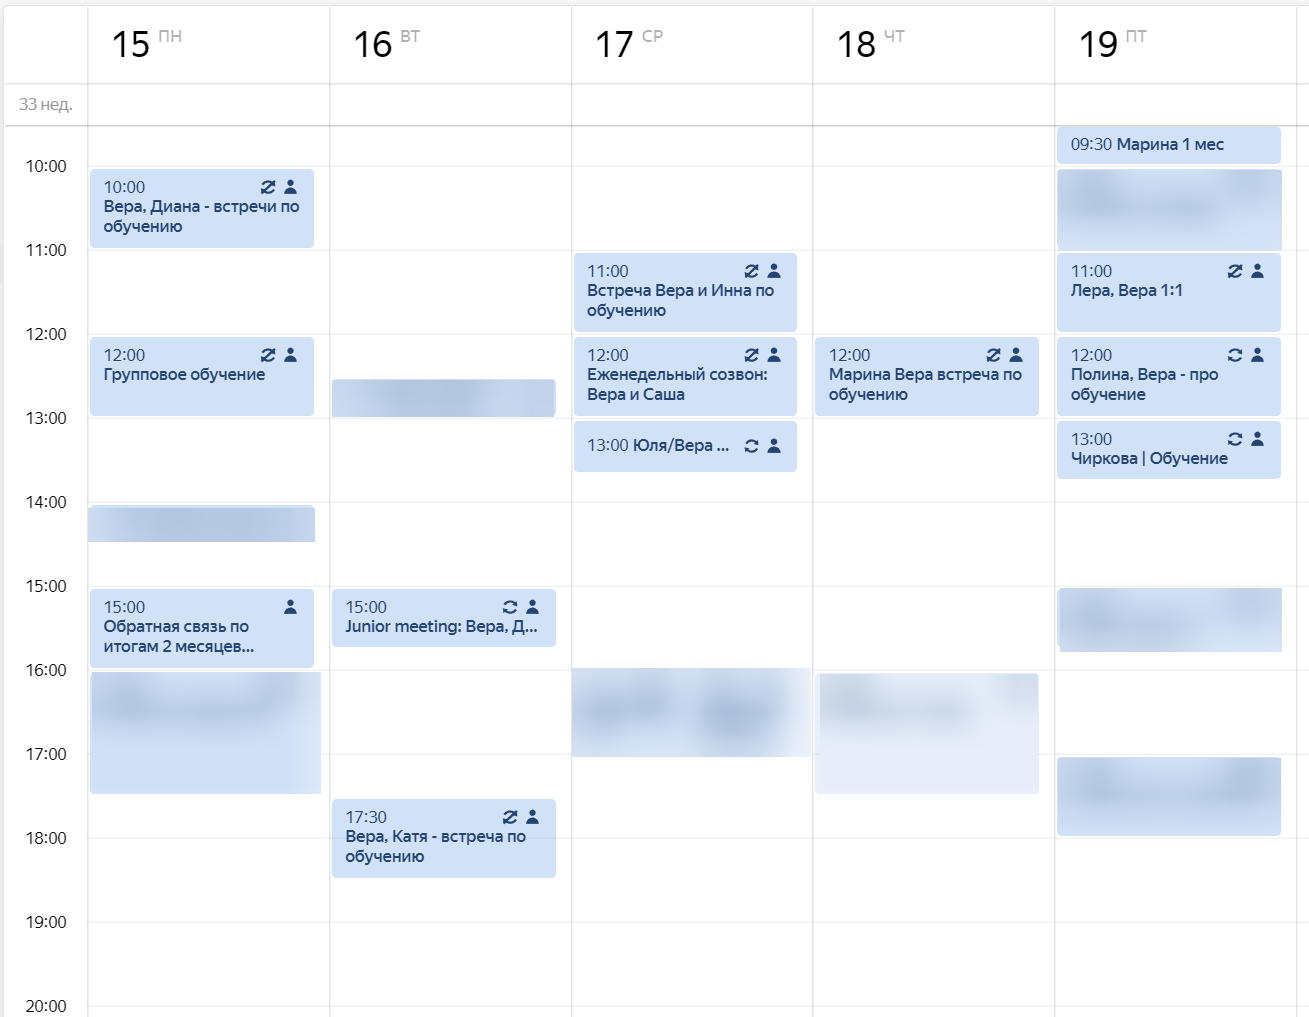 Обучение — моя основная задача, поэтому мой календарь выглядит примерно так. 
Если 1–2 ученика — конечно, встреч будет меньше